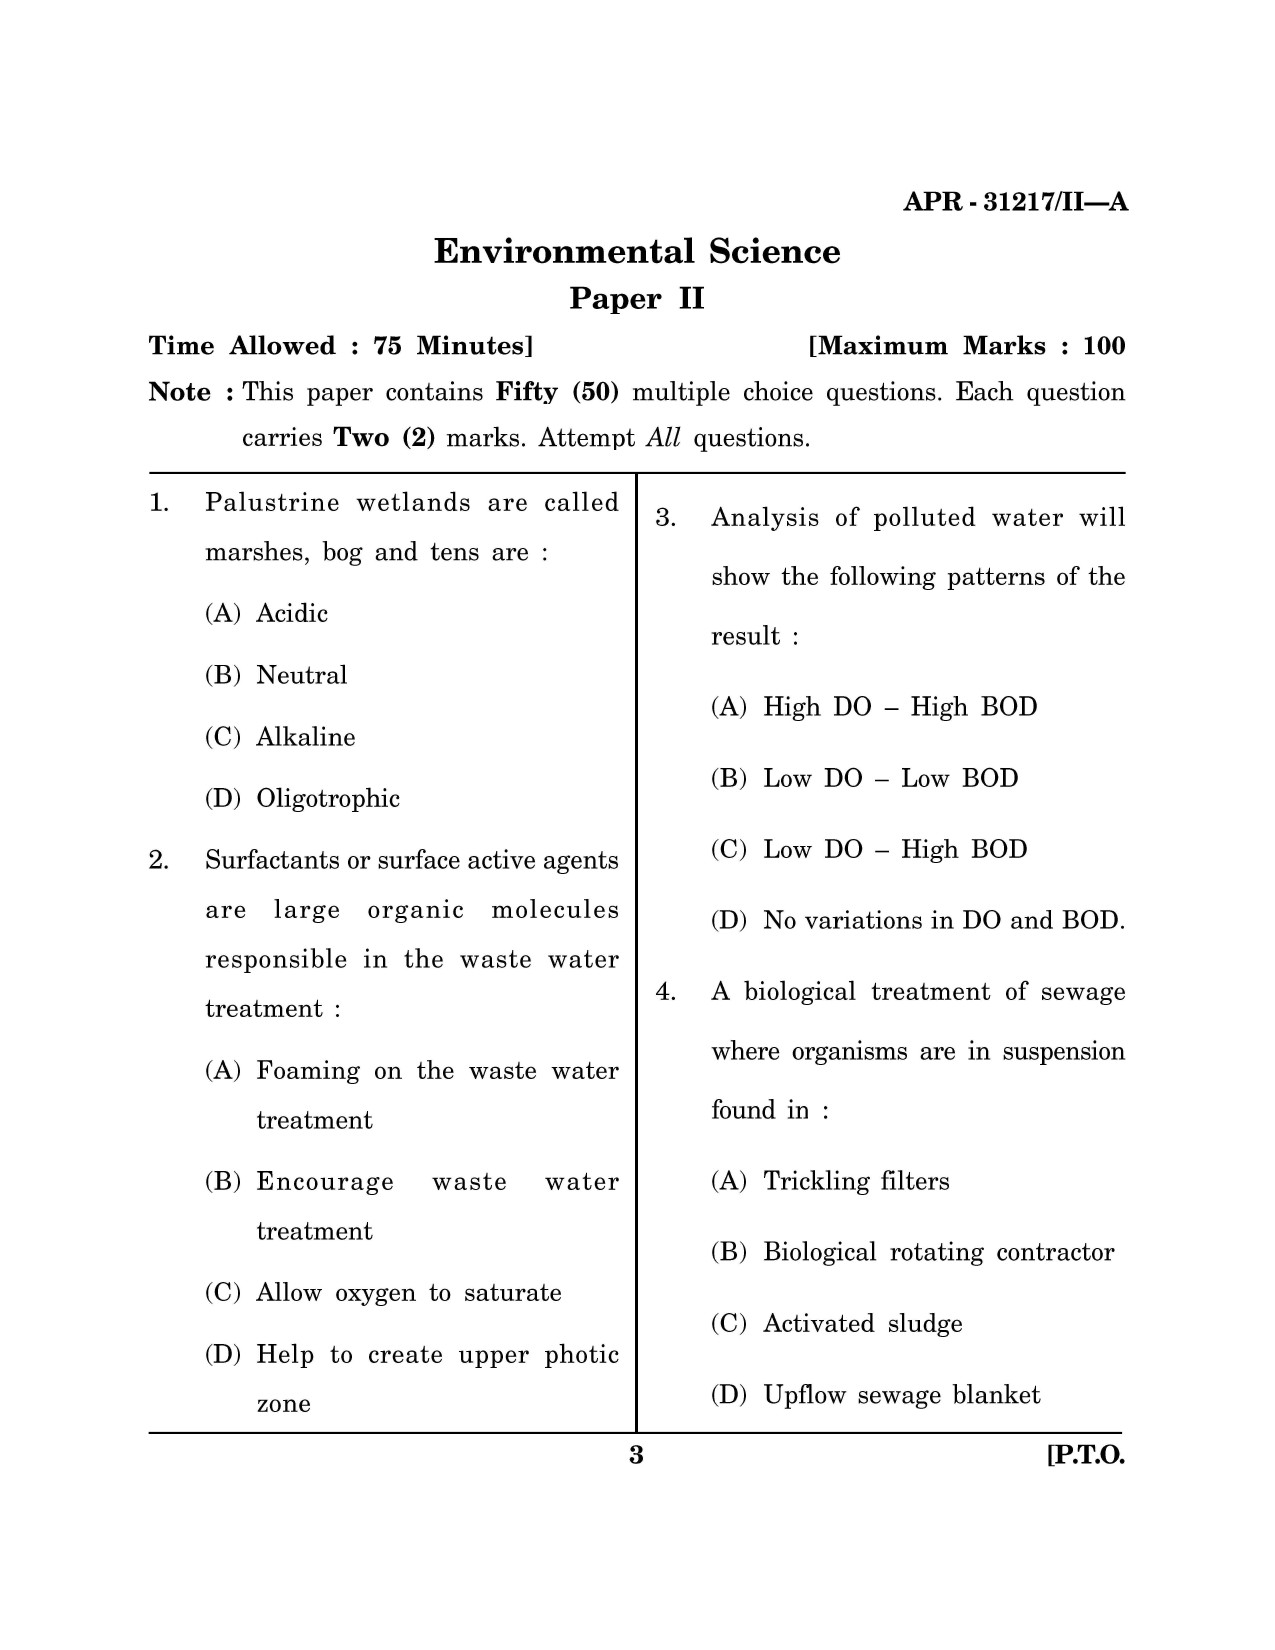 Maharashtra SET Environmental Sciences Question Paper II April 2017 2